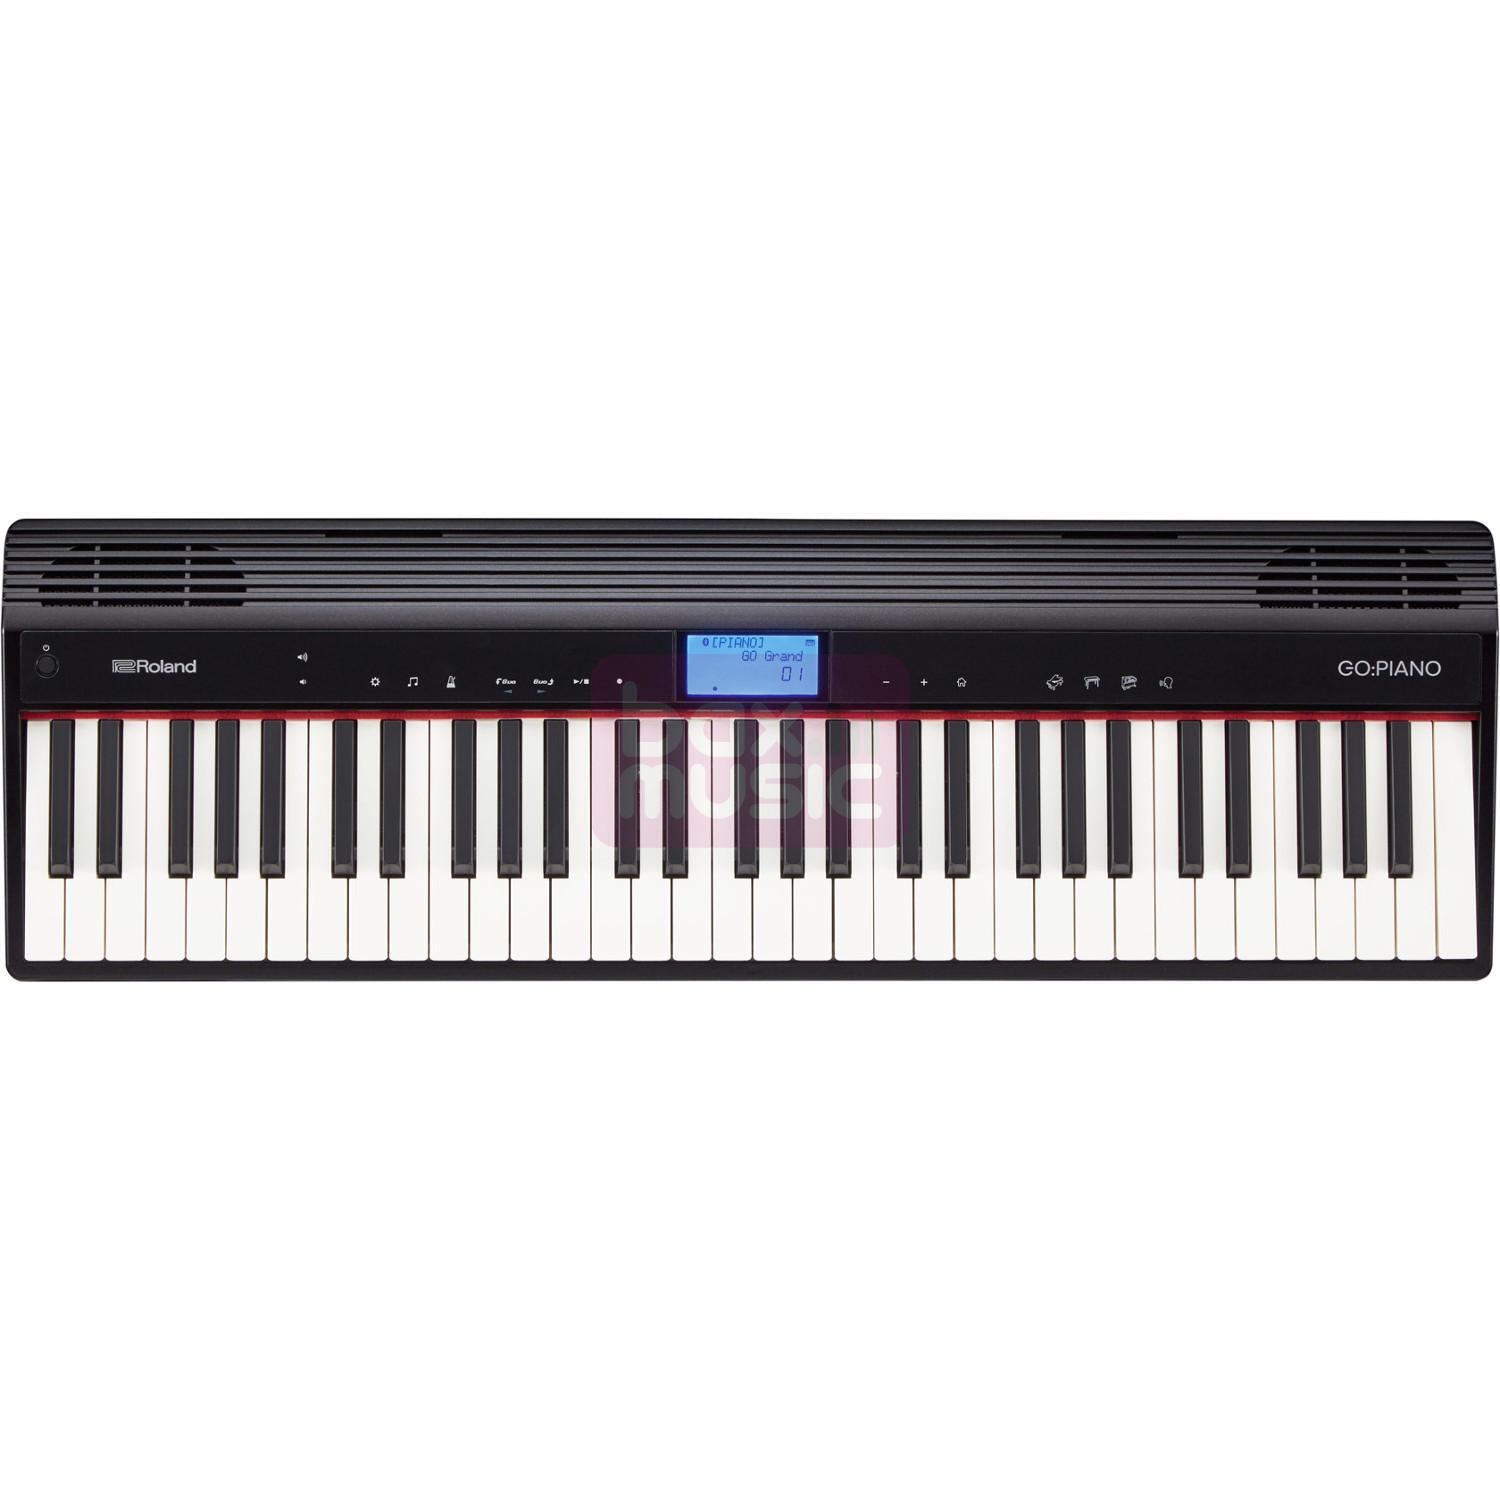 Roland GO-61P GO:PIANO digitale piano 61 toetsen